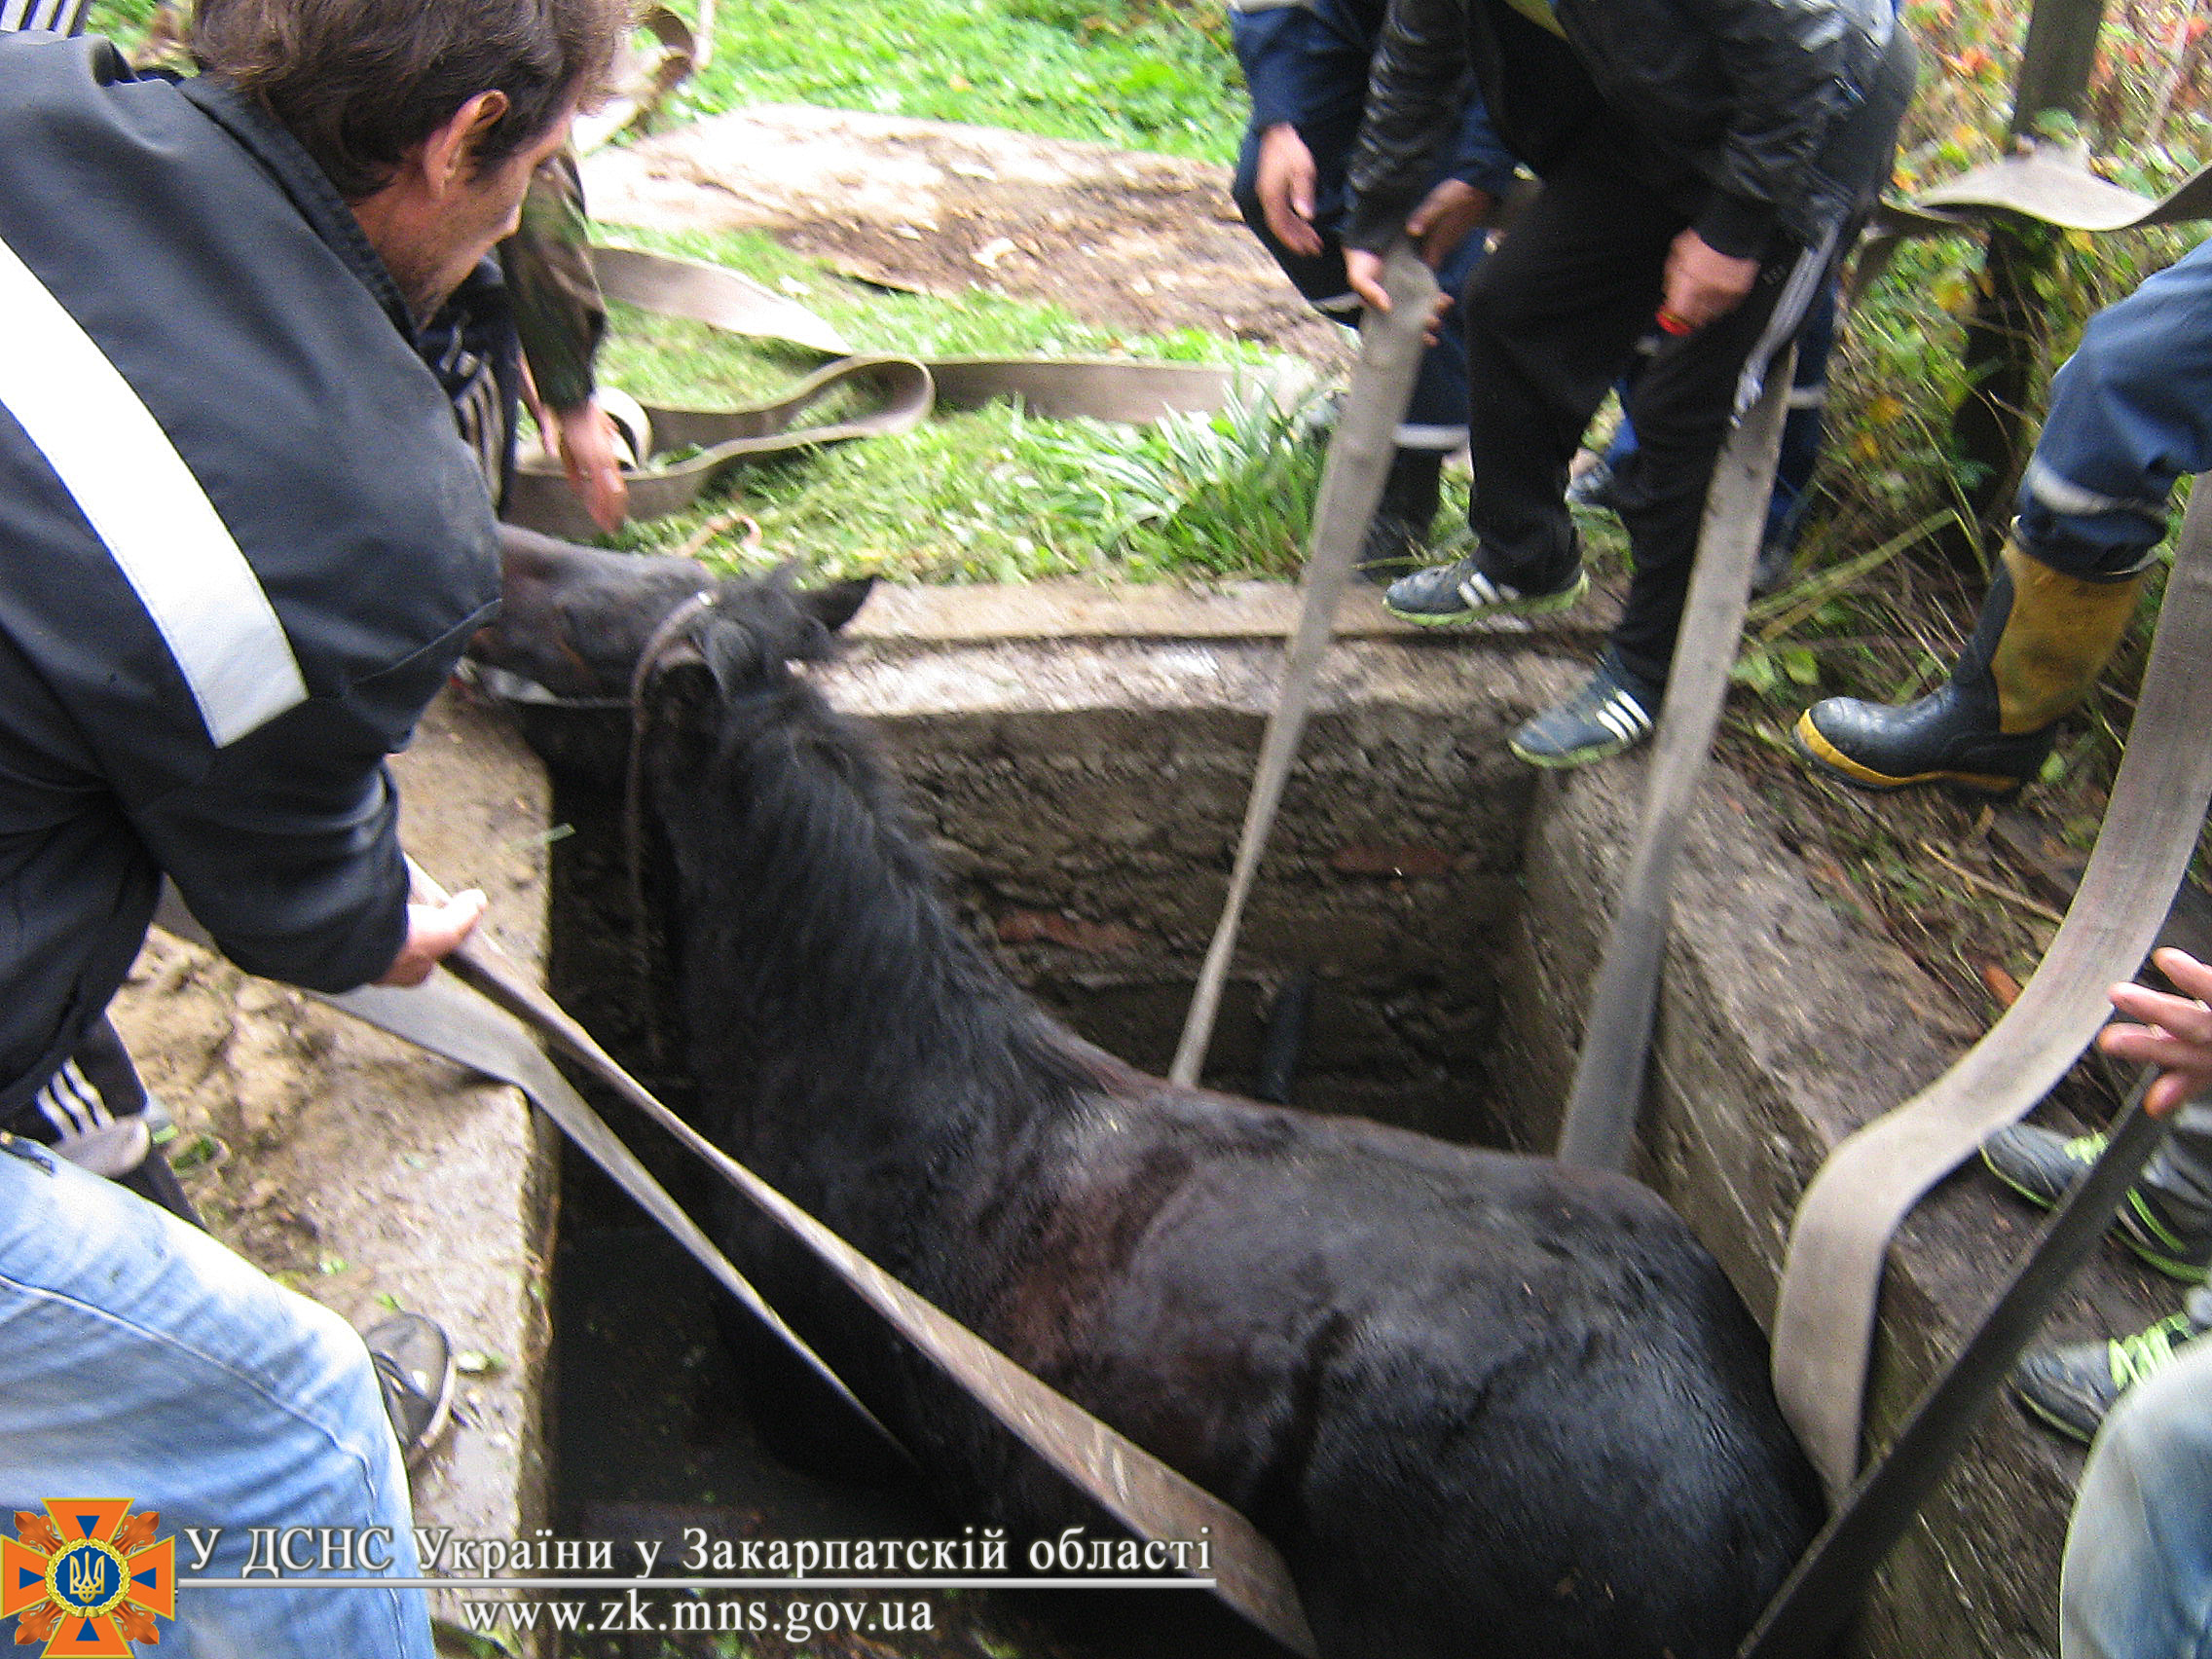 На Закарпатті рятували коня, що впав у каналізаційний люк (ФОТО)